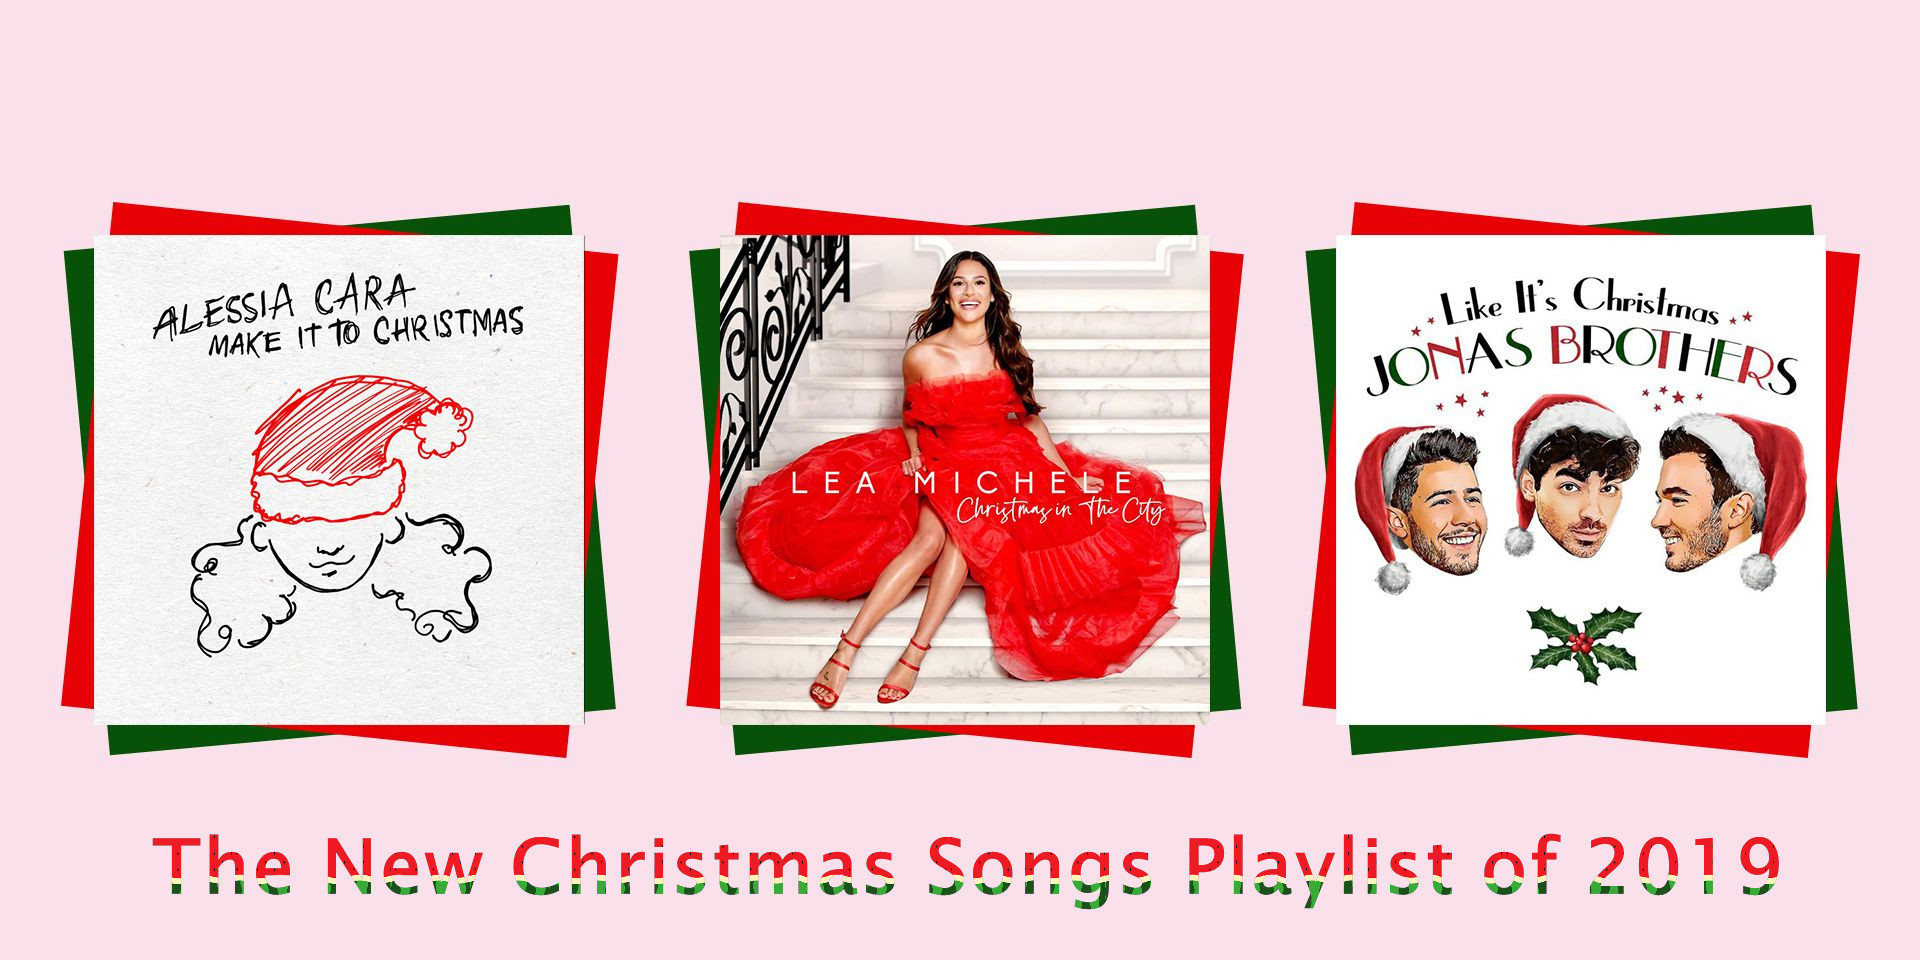 Baixe músicas de Natal para MP3 do Spotify / Apple Music (atualizado em  2021)